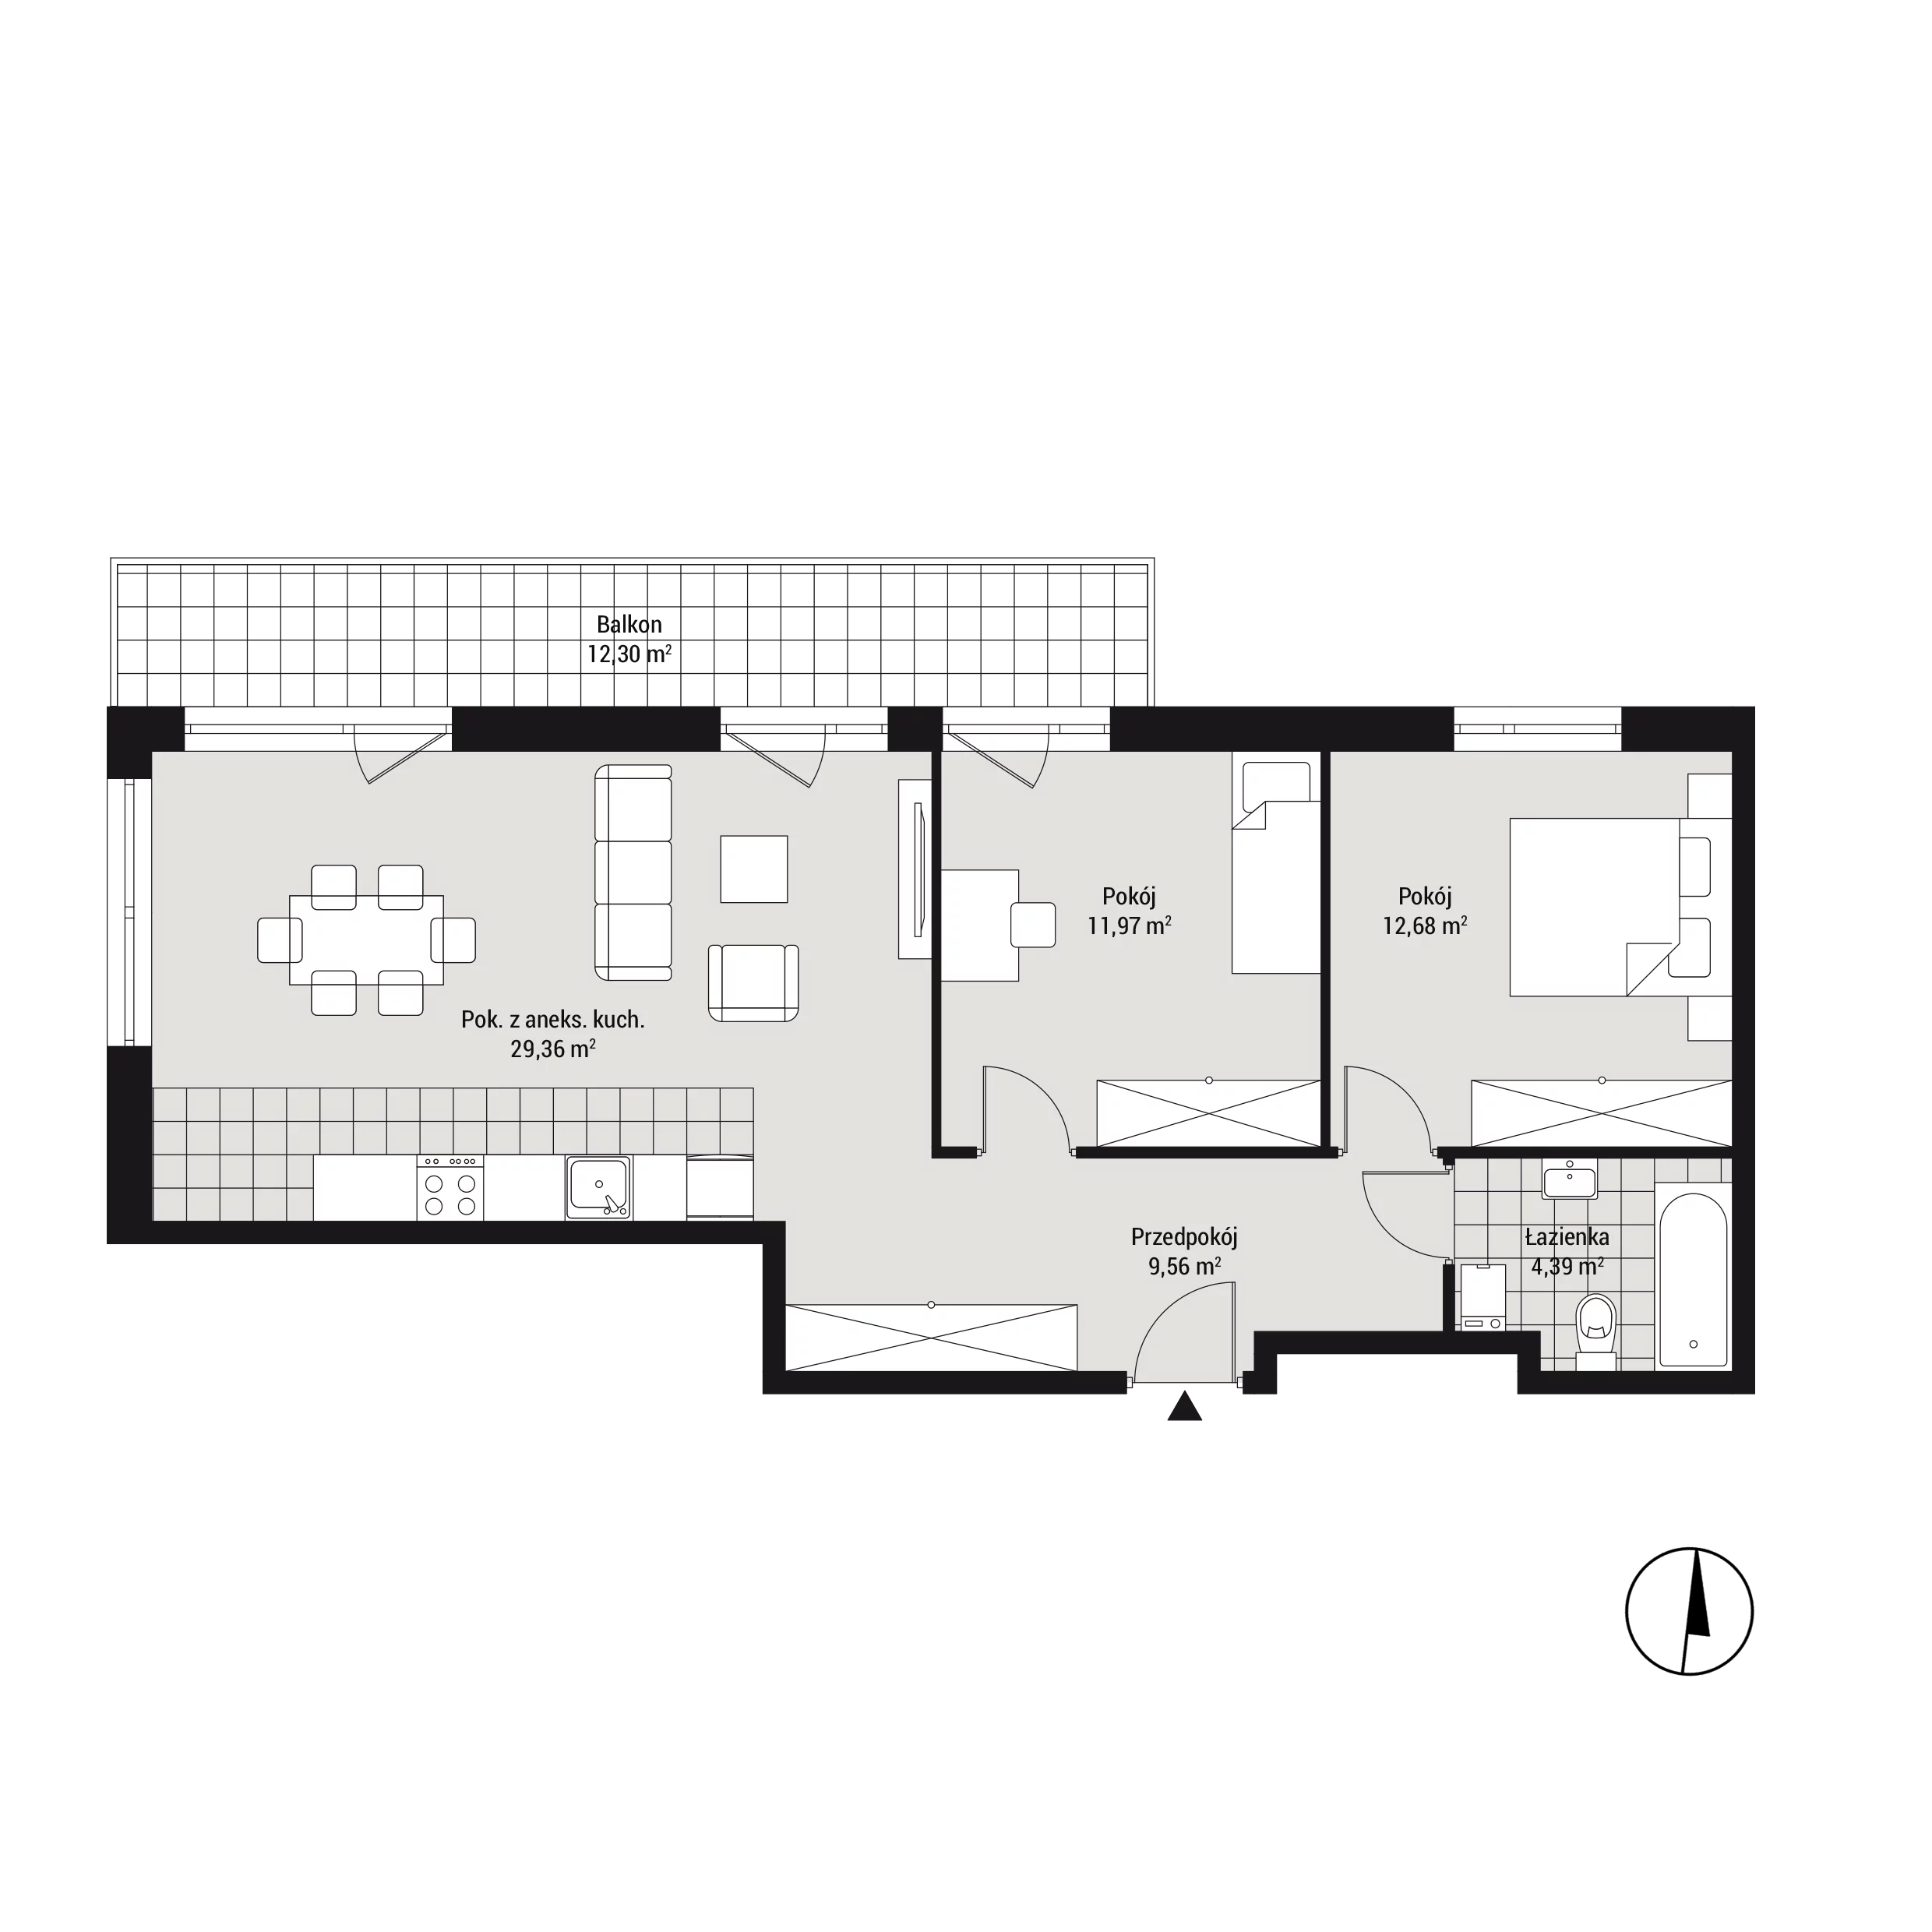 Mieszkanie 68,58 m², piętro 3, oferta nr mieszkanie A35, Na Koszutce, Katowice, Śródmieście, Koszutka, ul. Słoneczna 1